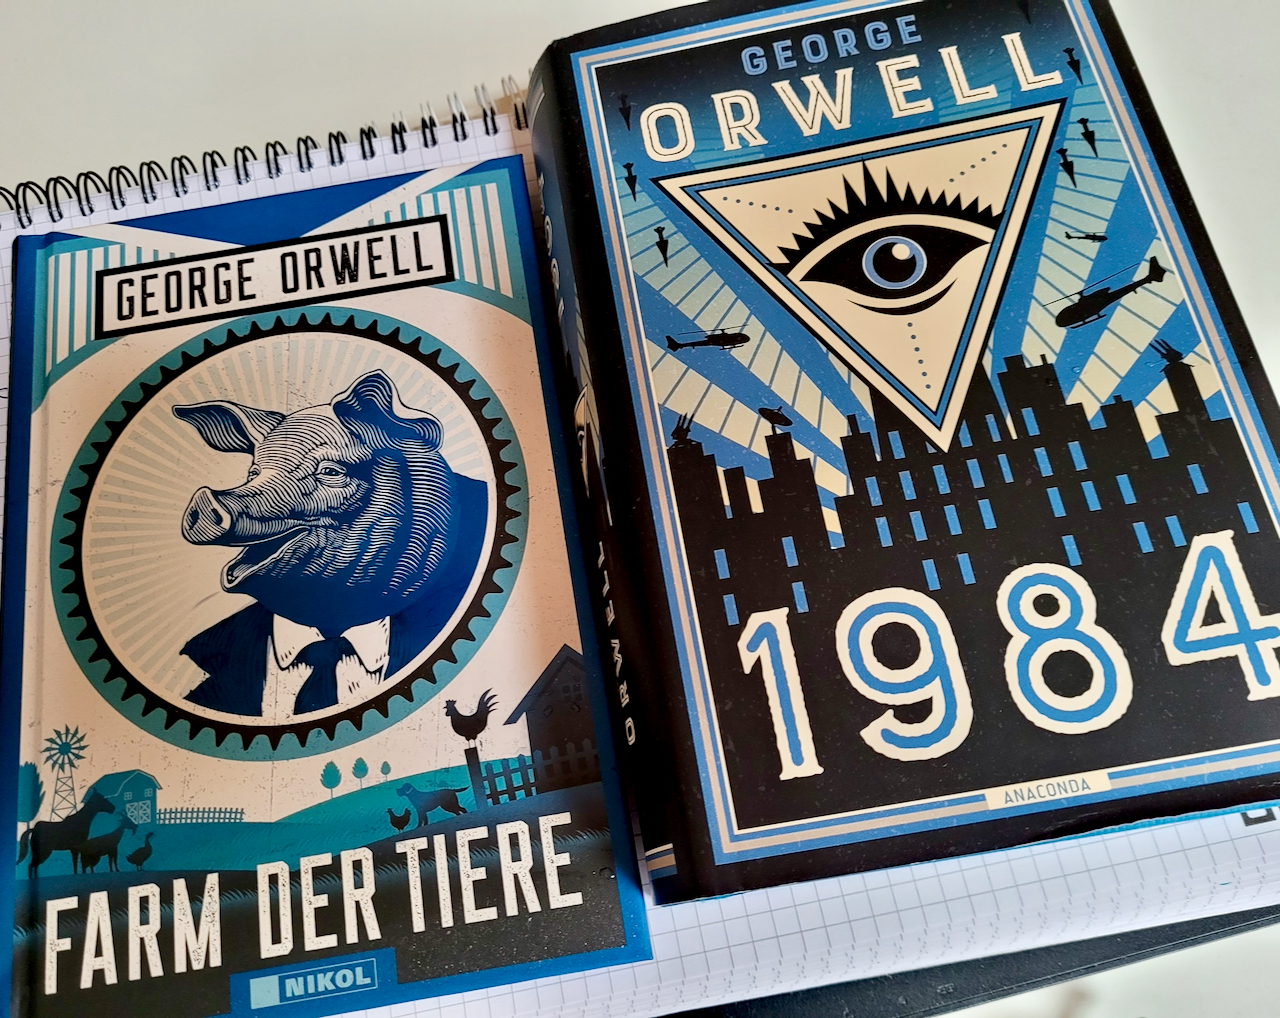 Zwei Neuausgaben von George Orwell: "Farm der Tiere" (Nikol) und "1984" (Anaconda). Foto: Frank Behrens